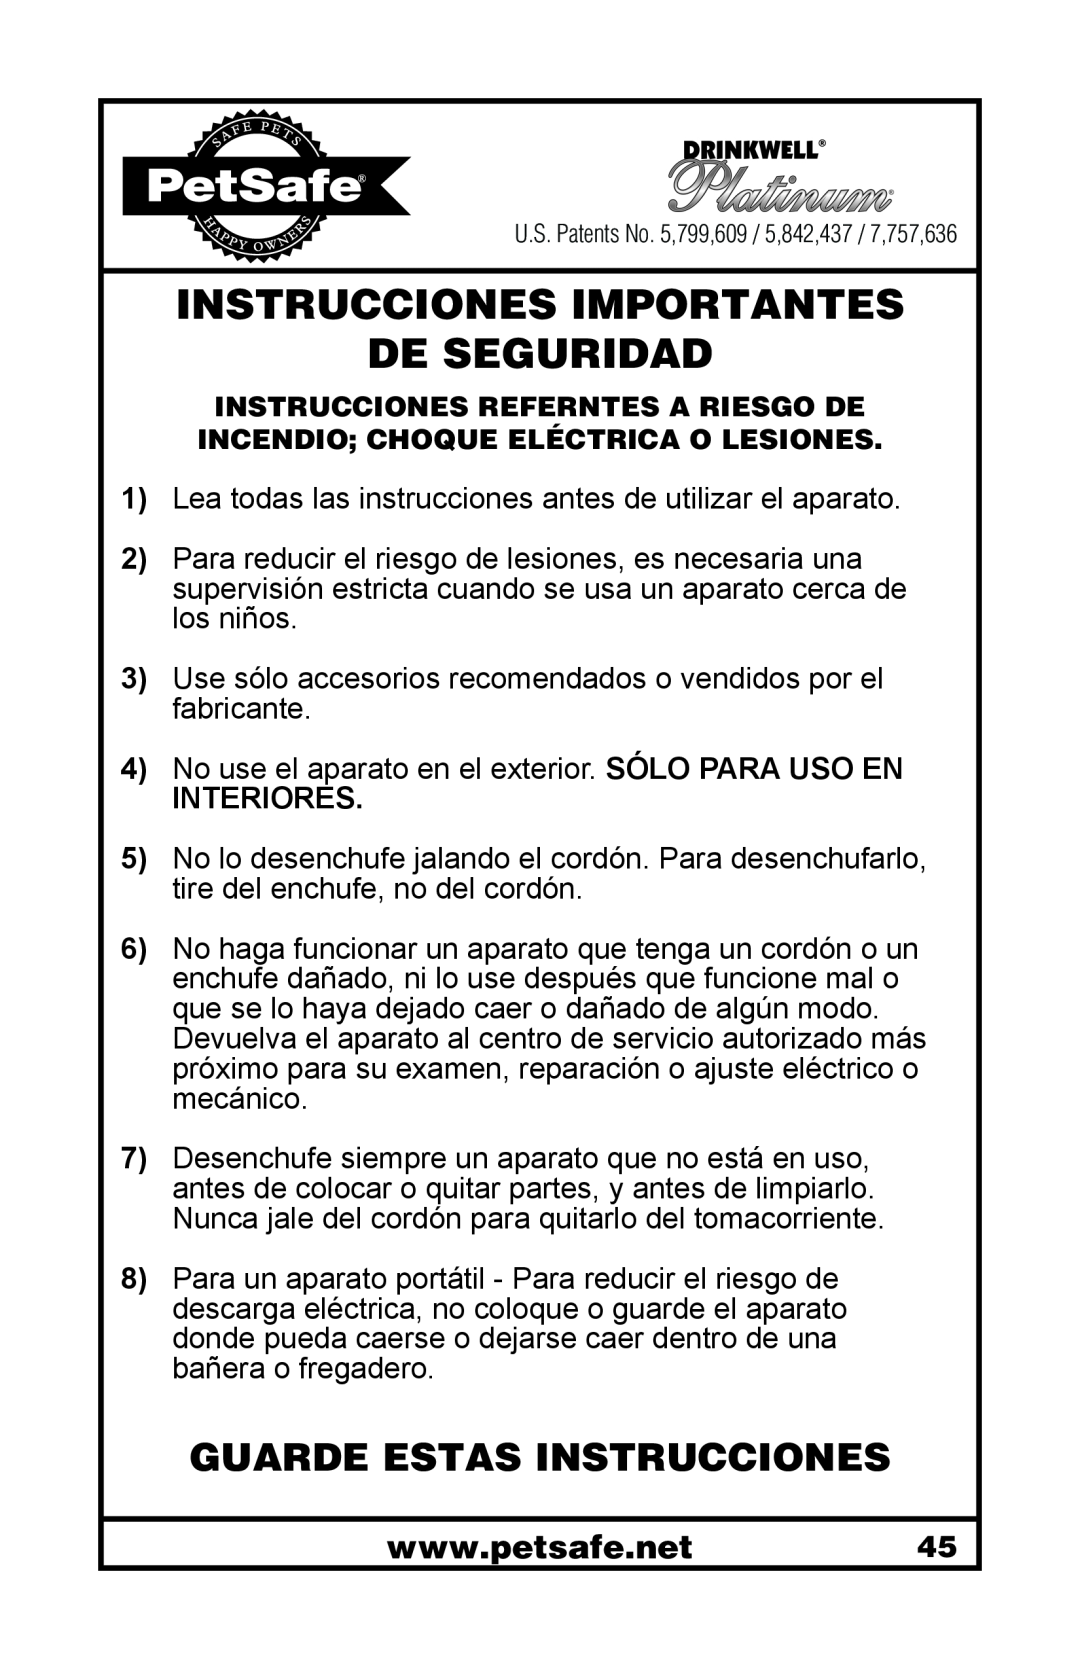 Petsafe 400-1255-19 manuel dutilisation Guarde Estas Instrucciones, Instrucciones Importantes De Seguridad, Interiores 